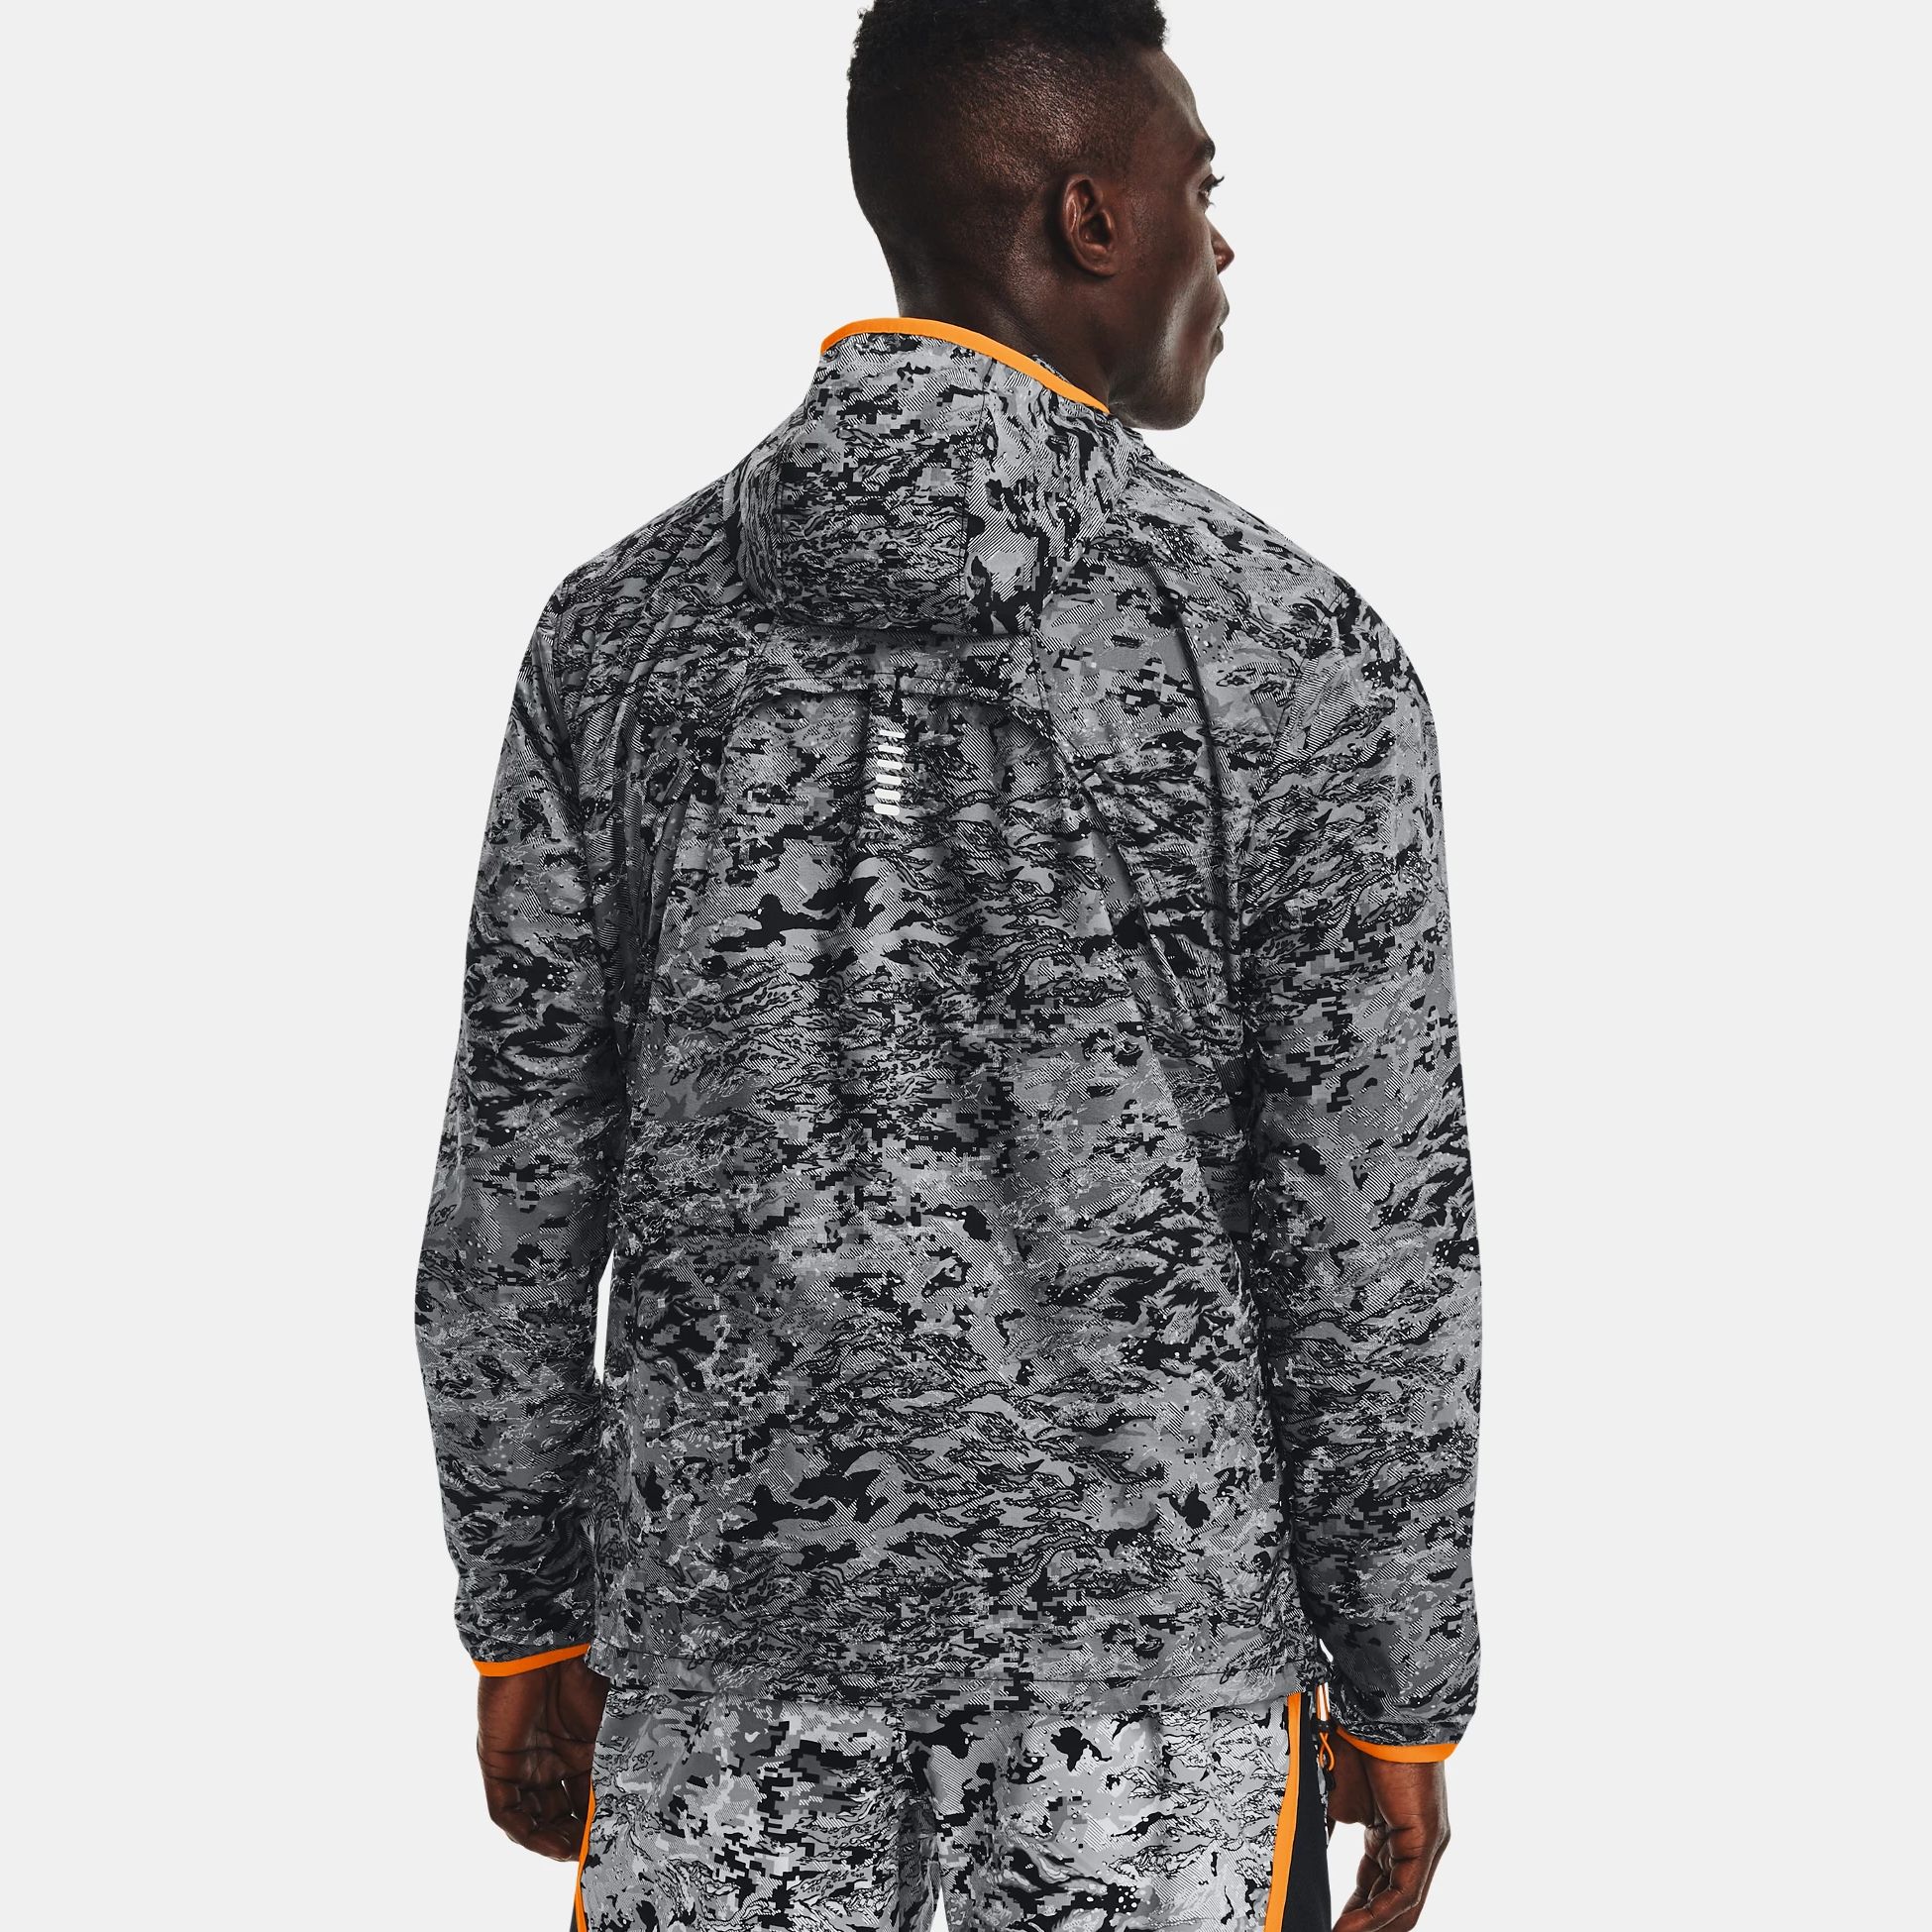 Geci & Veste -  under armour UA OutRun The Storm Reflective Packable Jacket